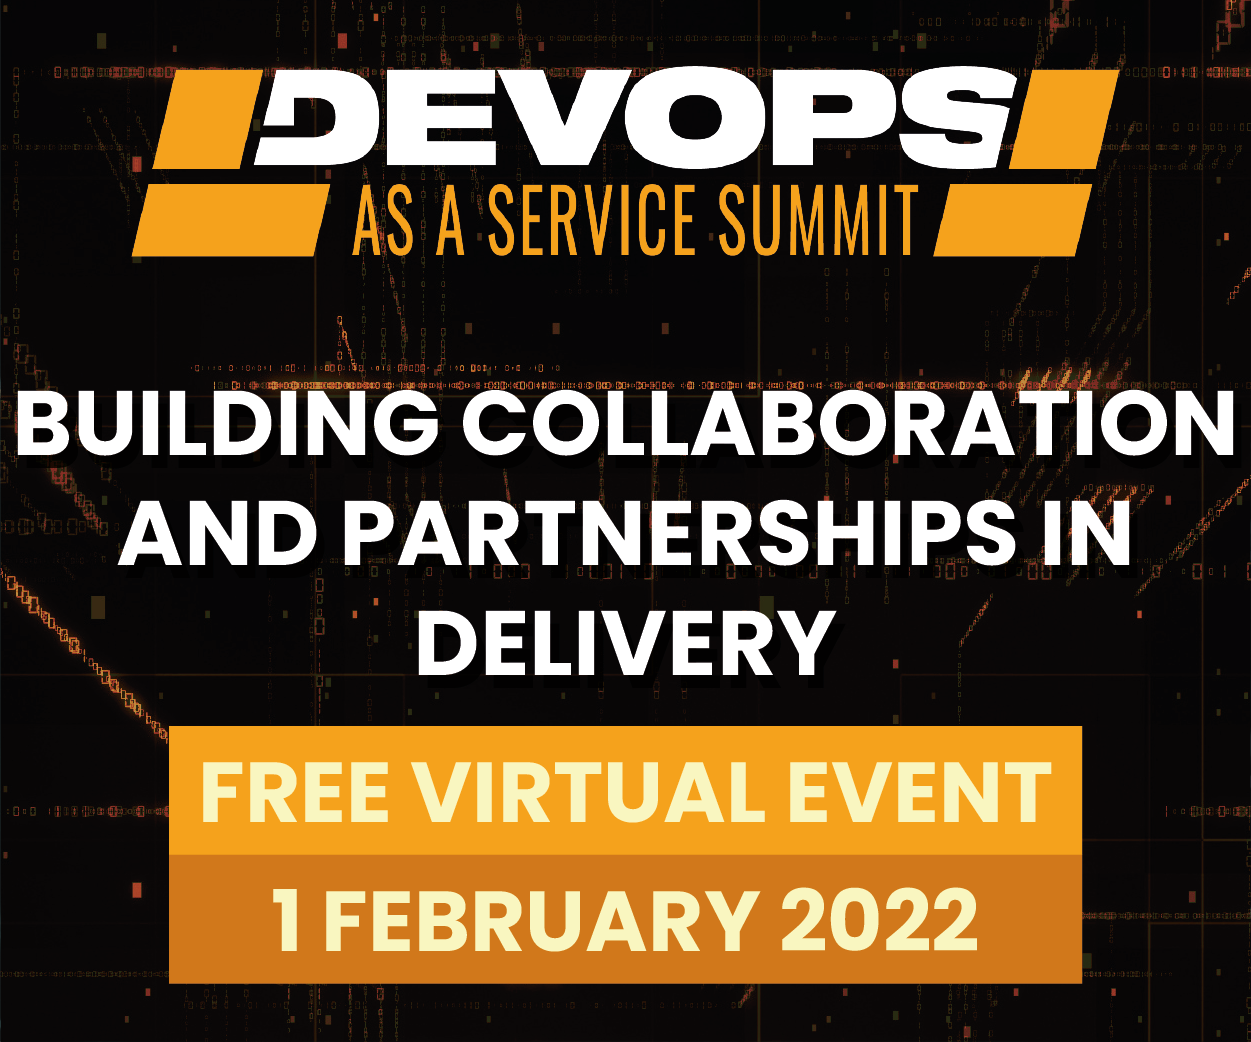 DevOps as A Service Summit 2021